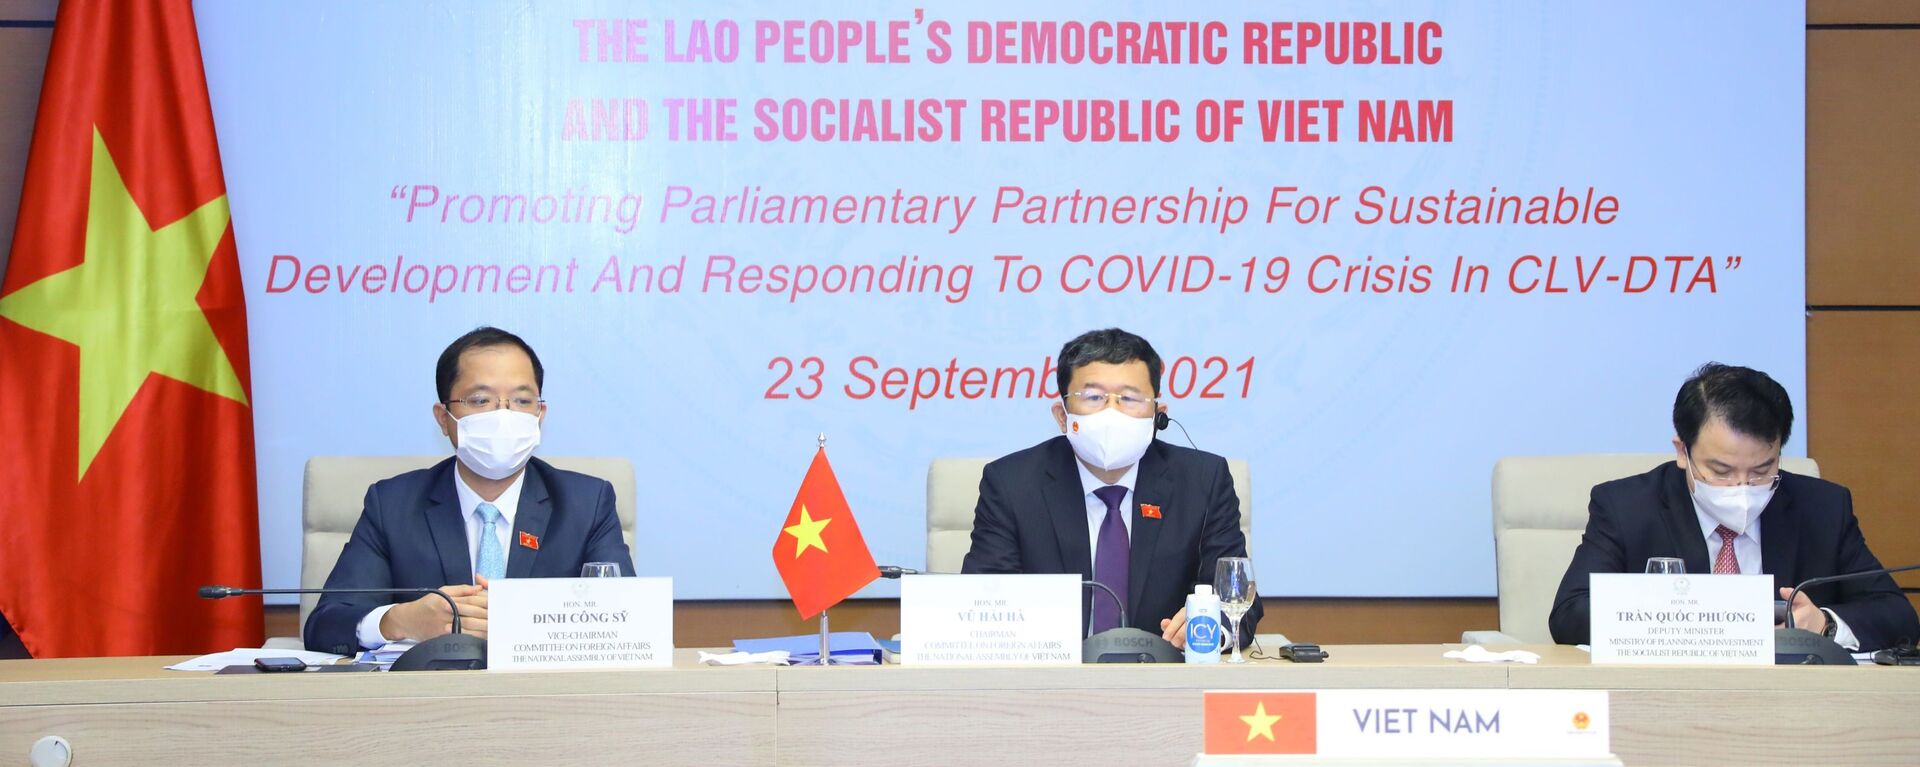 Chủ nhiệm Ủy ban Đối ngoại của Quốc hội Việt Nam Vũ Hải Hà (giữa) với các đại biểu dự tại điểm cầu Hà Nội. - Sputnik Việt Nam, 1920, 23.09.2021